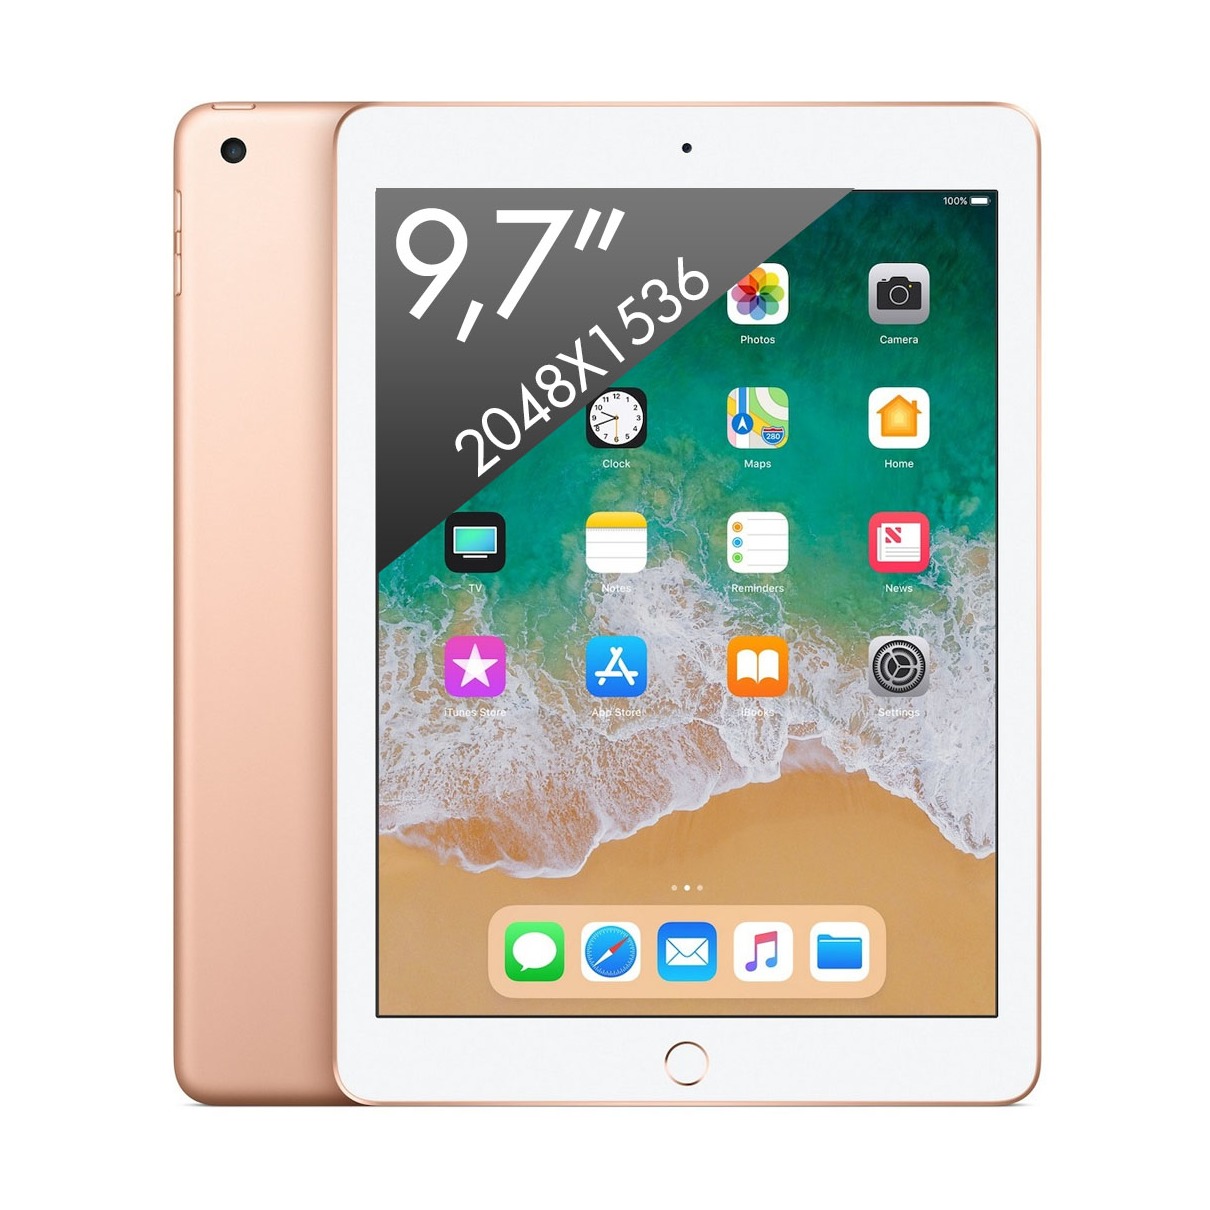 Telefoonleader - Apple iPad (2018) Wifi (128GB) goud